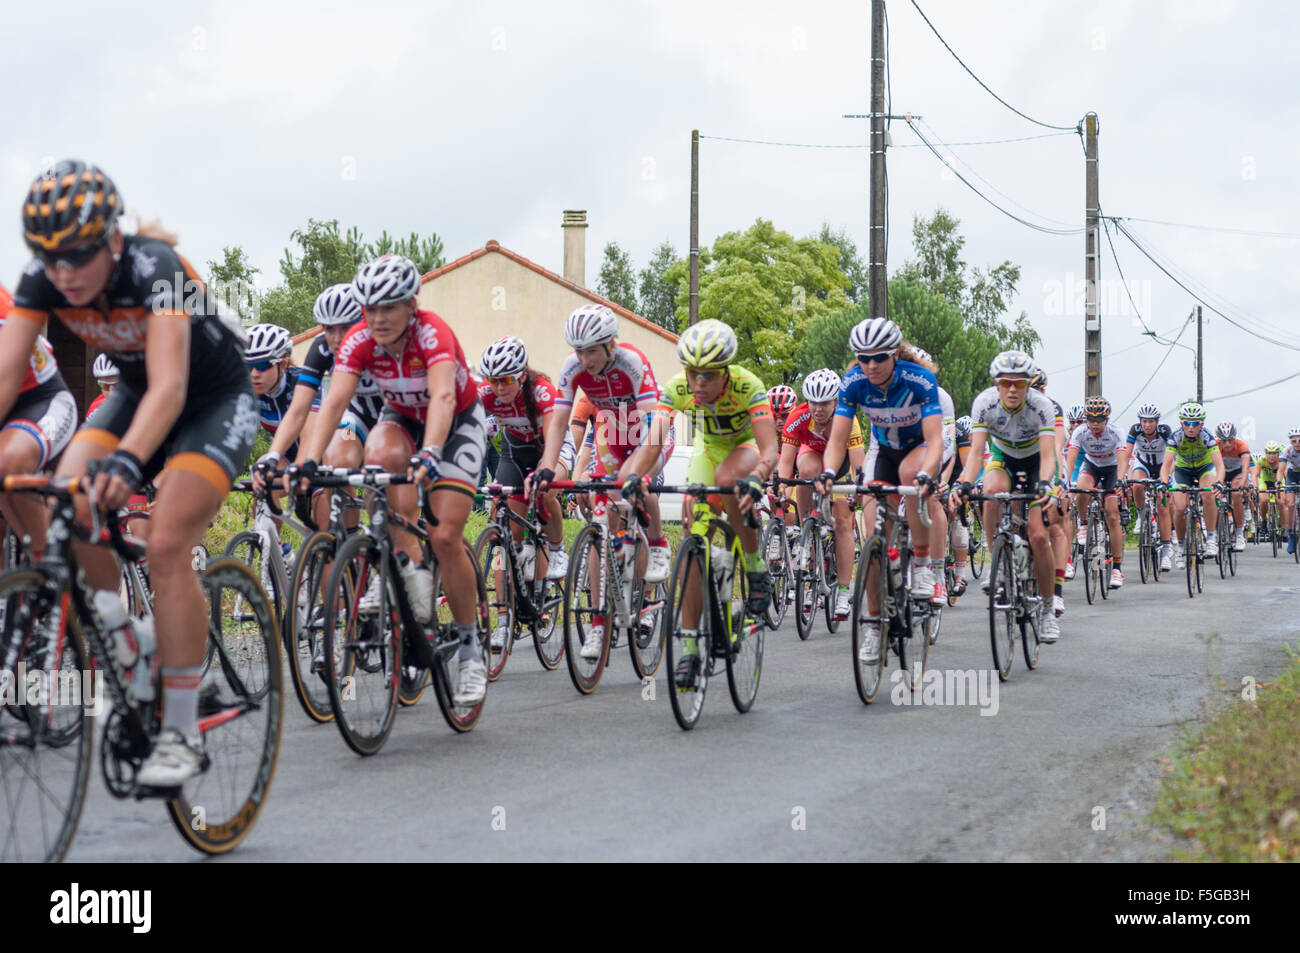 Route de France Feminine, Cycling Race, Mouilleron-en-Pareds Stock Photo